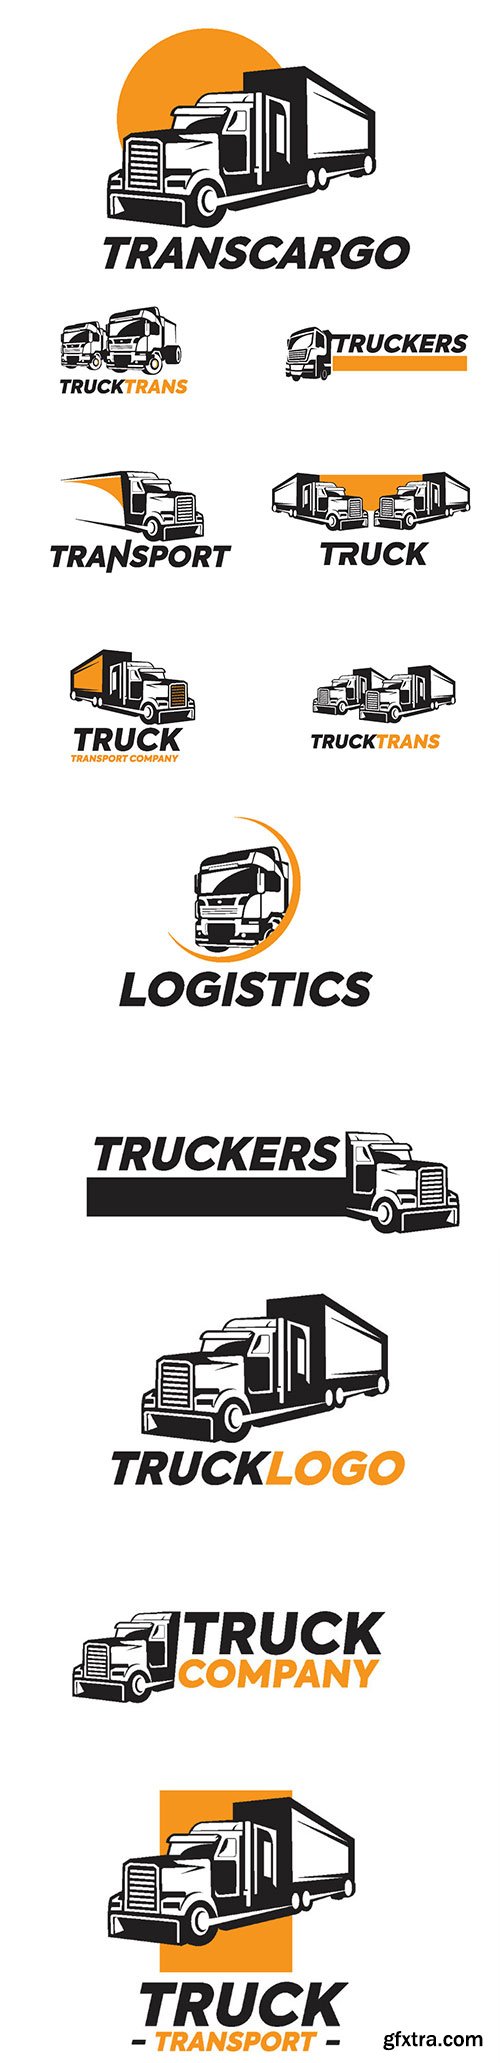 Truck logo vector illustration